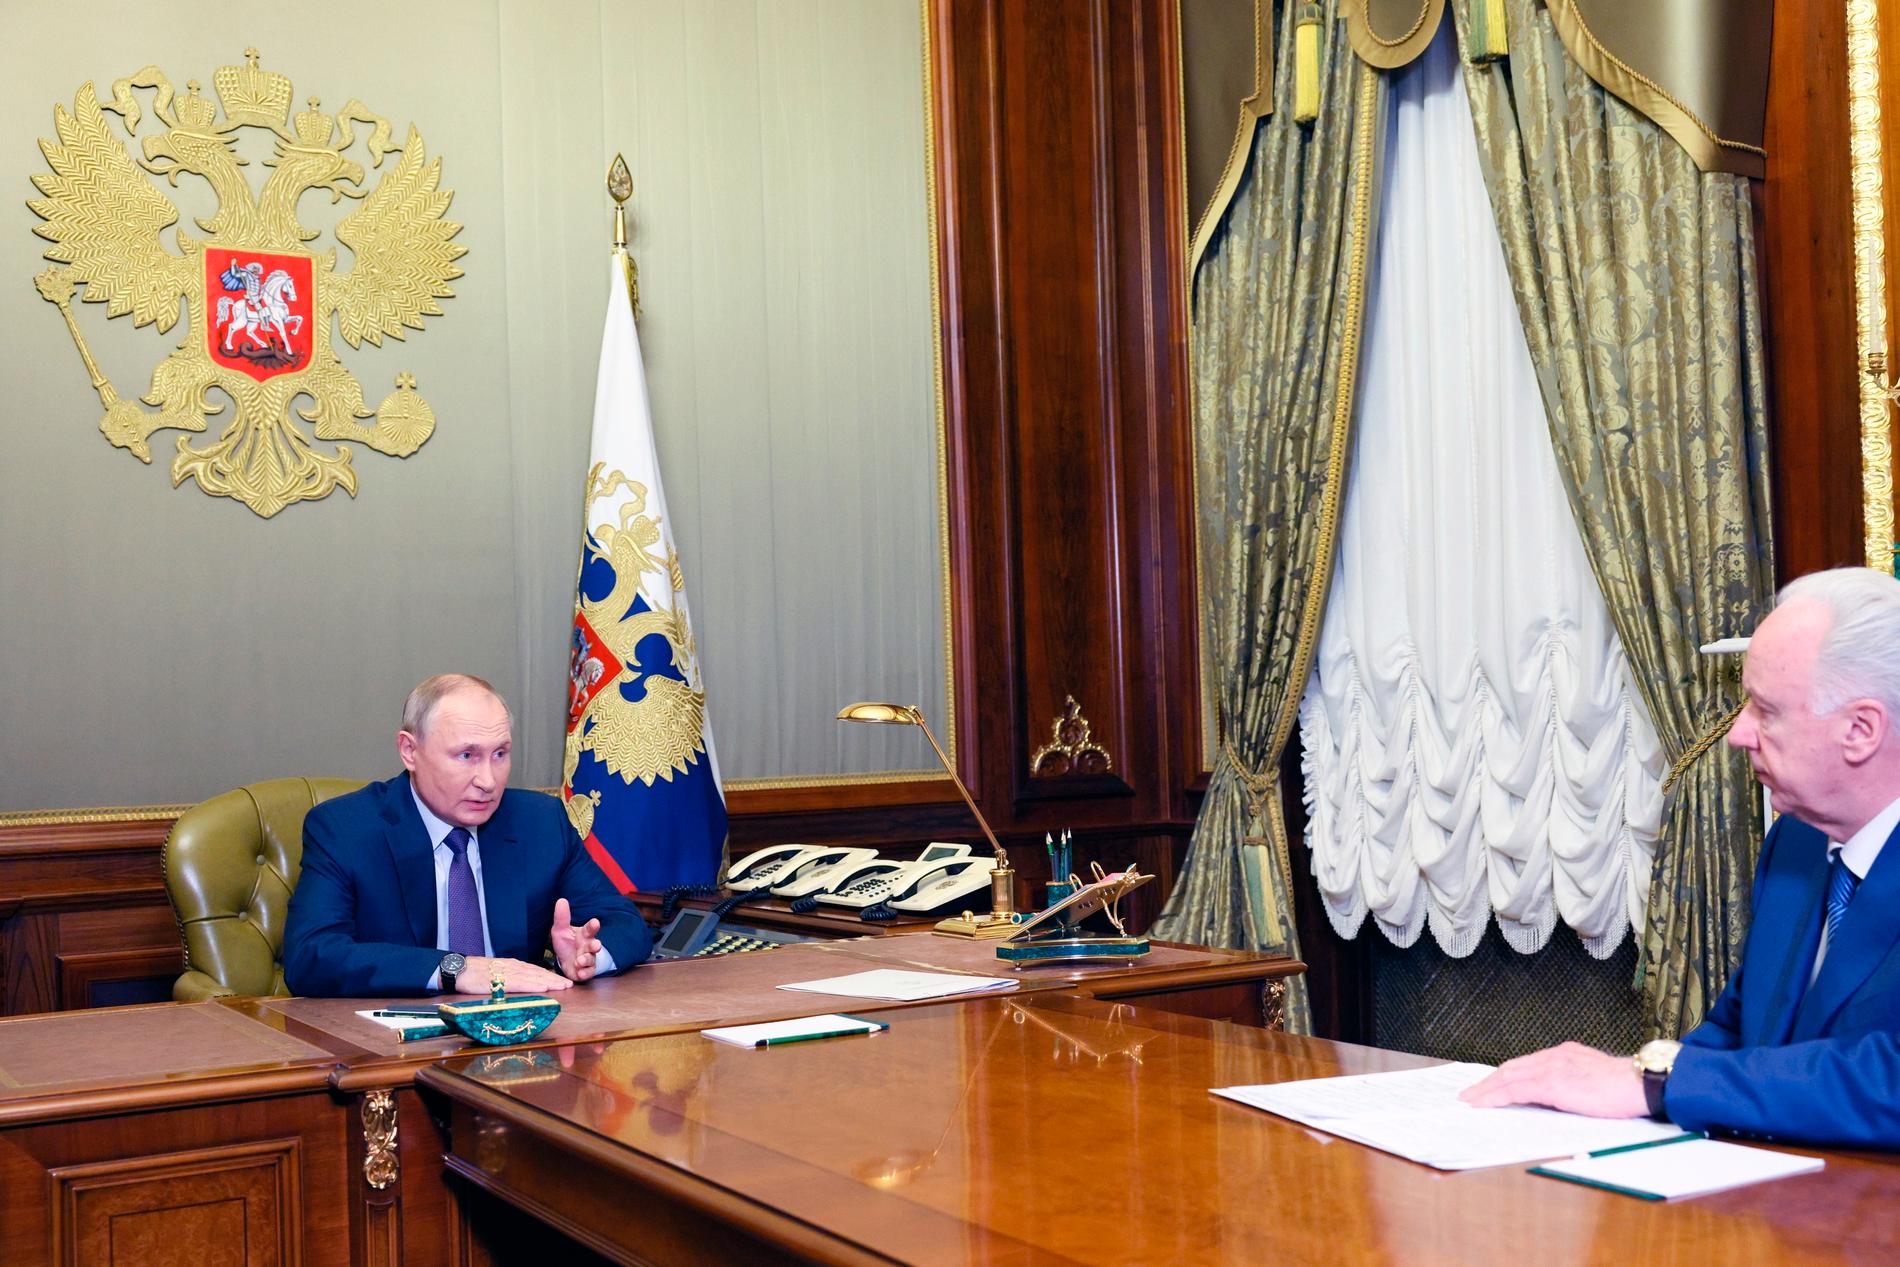 Buoni autobus: Vladimir Putin e Bastrykin in un incontro a San Pietroburgo nell'ottobre 2022. Hanno studiato insieme a San Pietroburgo.